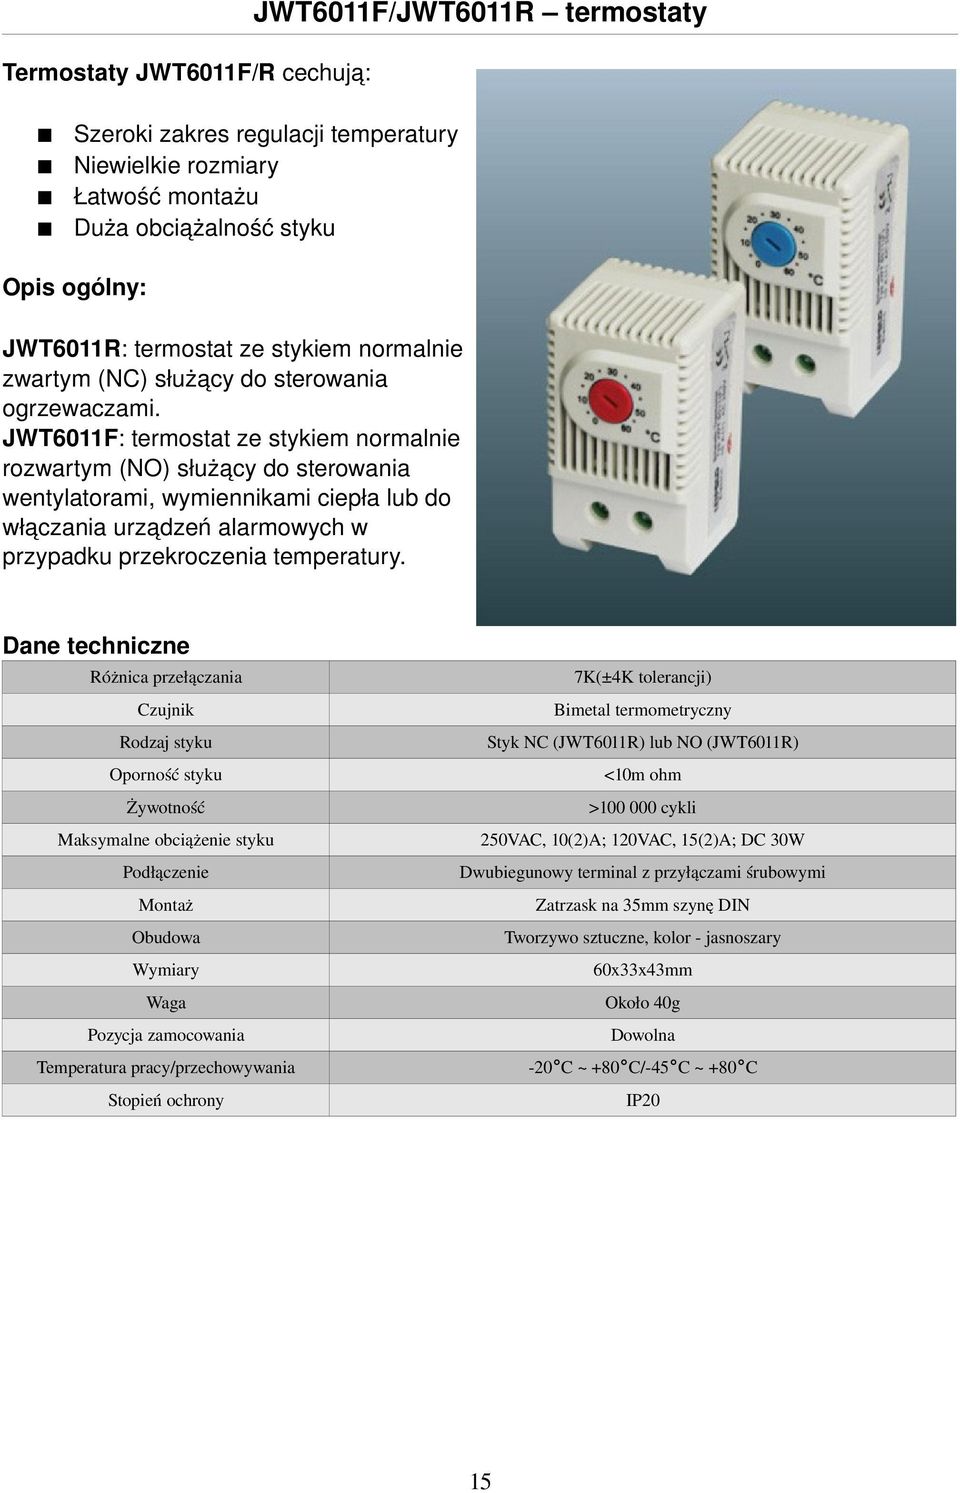 JWT6011F: termostat ze stykiem normalnie rozwartym (NO) służący do sterowania wentylatorami, wymiennikami ciepła lub do włączania urządzeń alarmowych w przypadku przekroczenia temperatury.